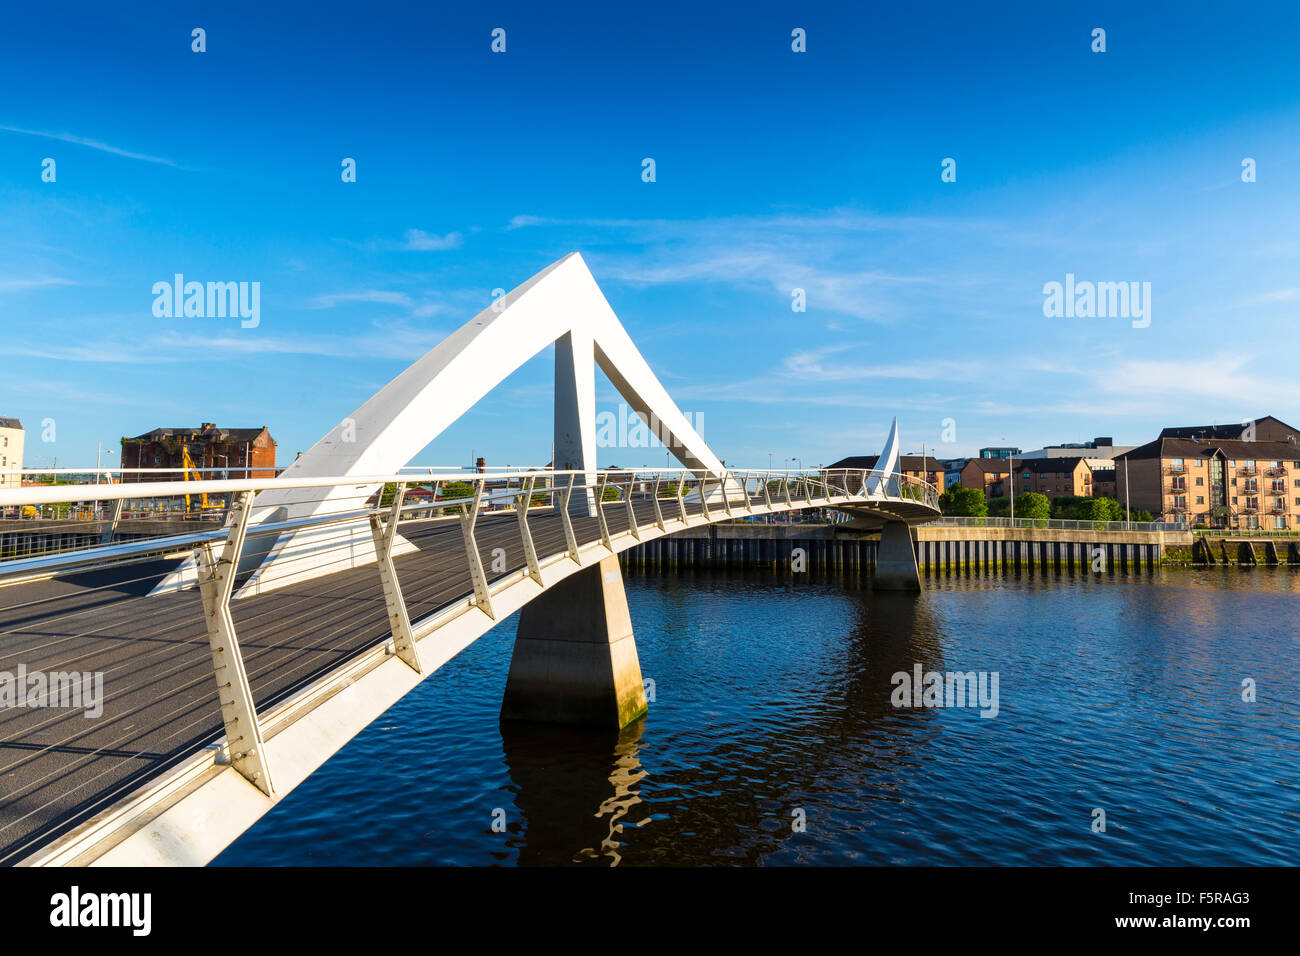 Die Tradeston-Brücke (Tredstoun) bekannt als die Wellenlinie Brücke, eine Fußgängerbrücke über den Fluss Clyde in Glasgow, Schottland Stockfoto